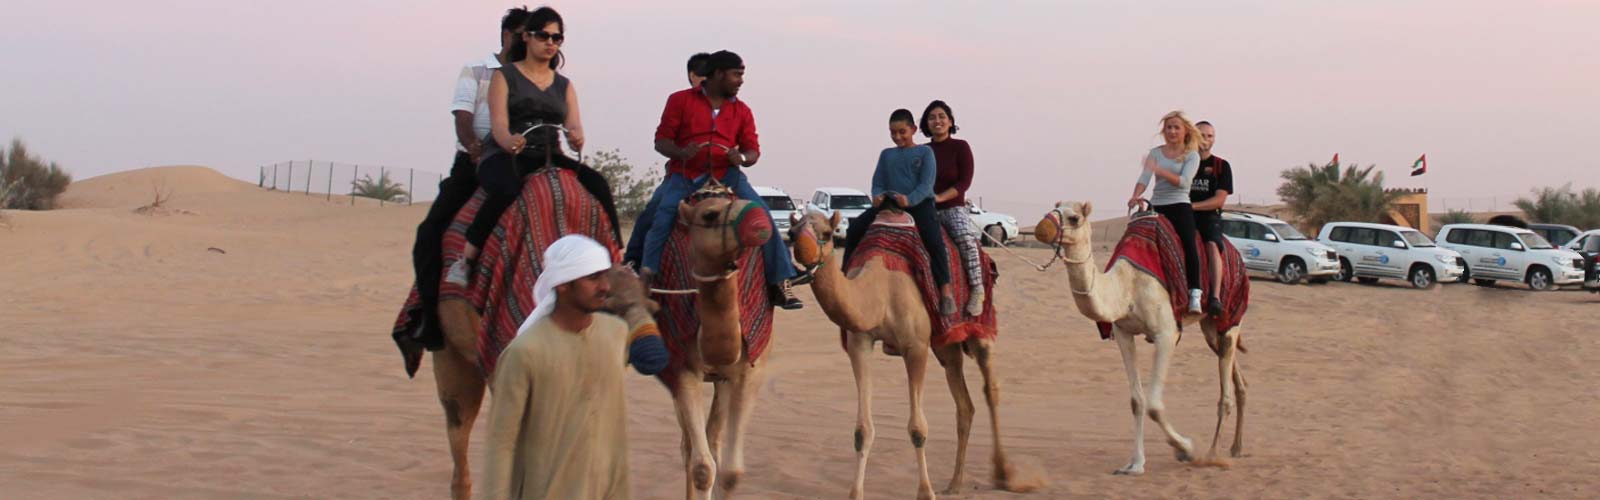 Camel Safari AdventureTour Book Online